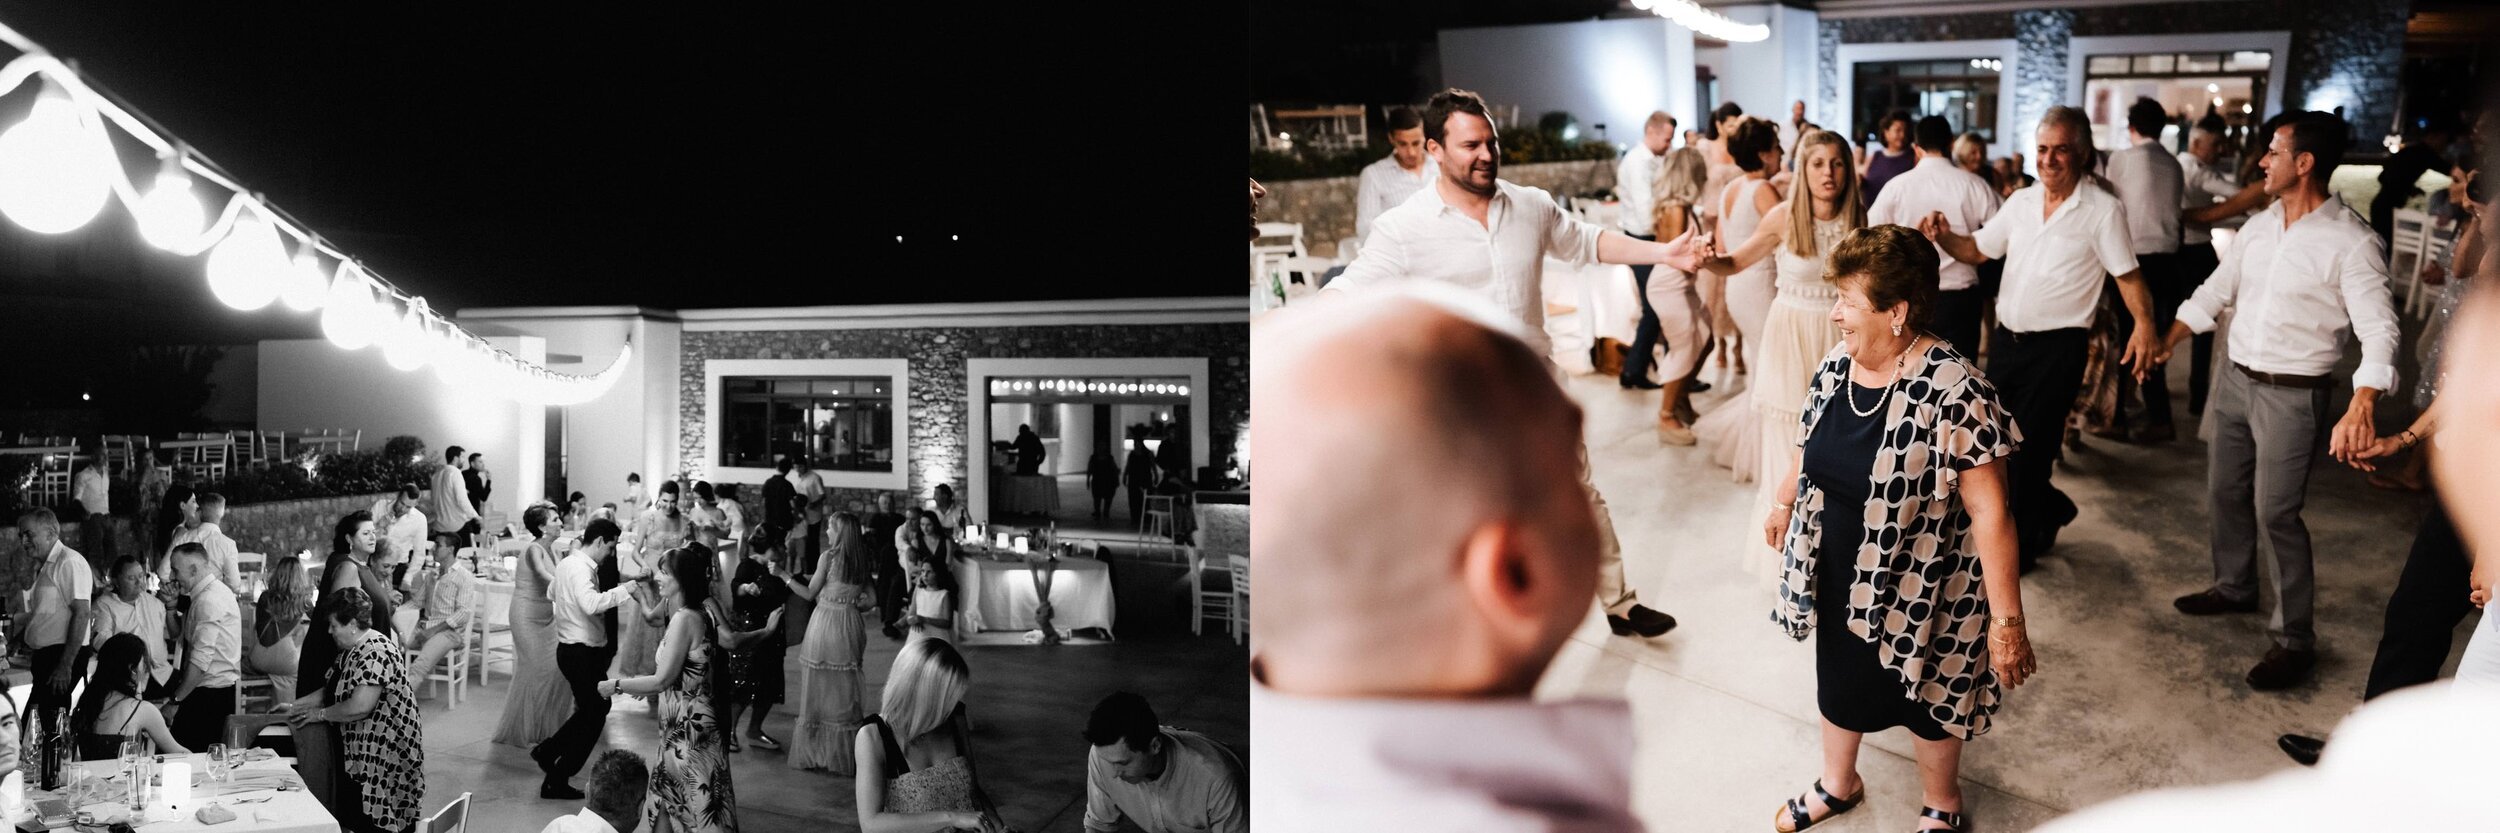 Greece+Santorini+Rhodes+wedding+photogtaphy-186.jpg